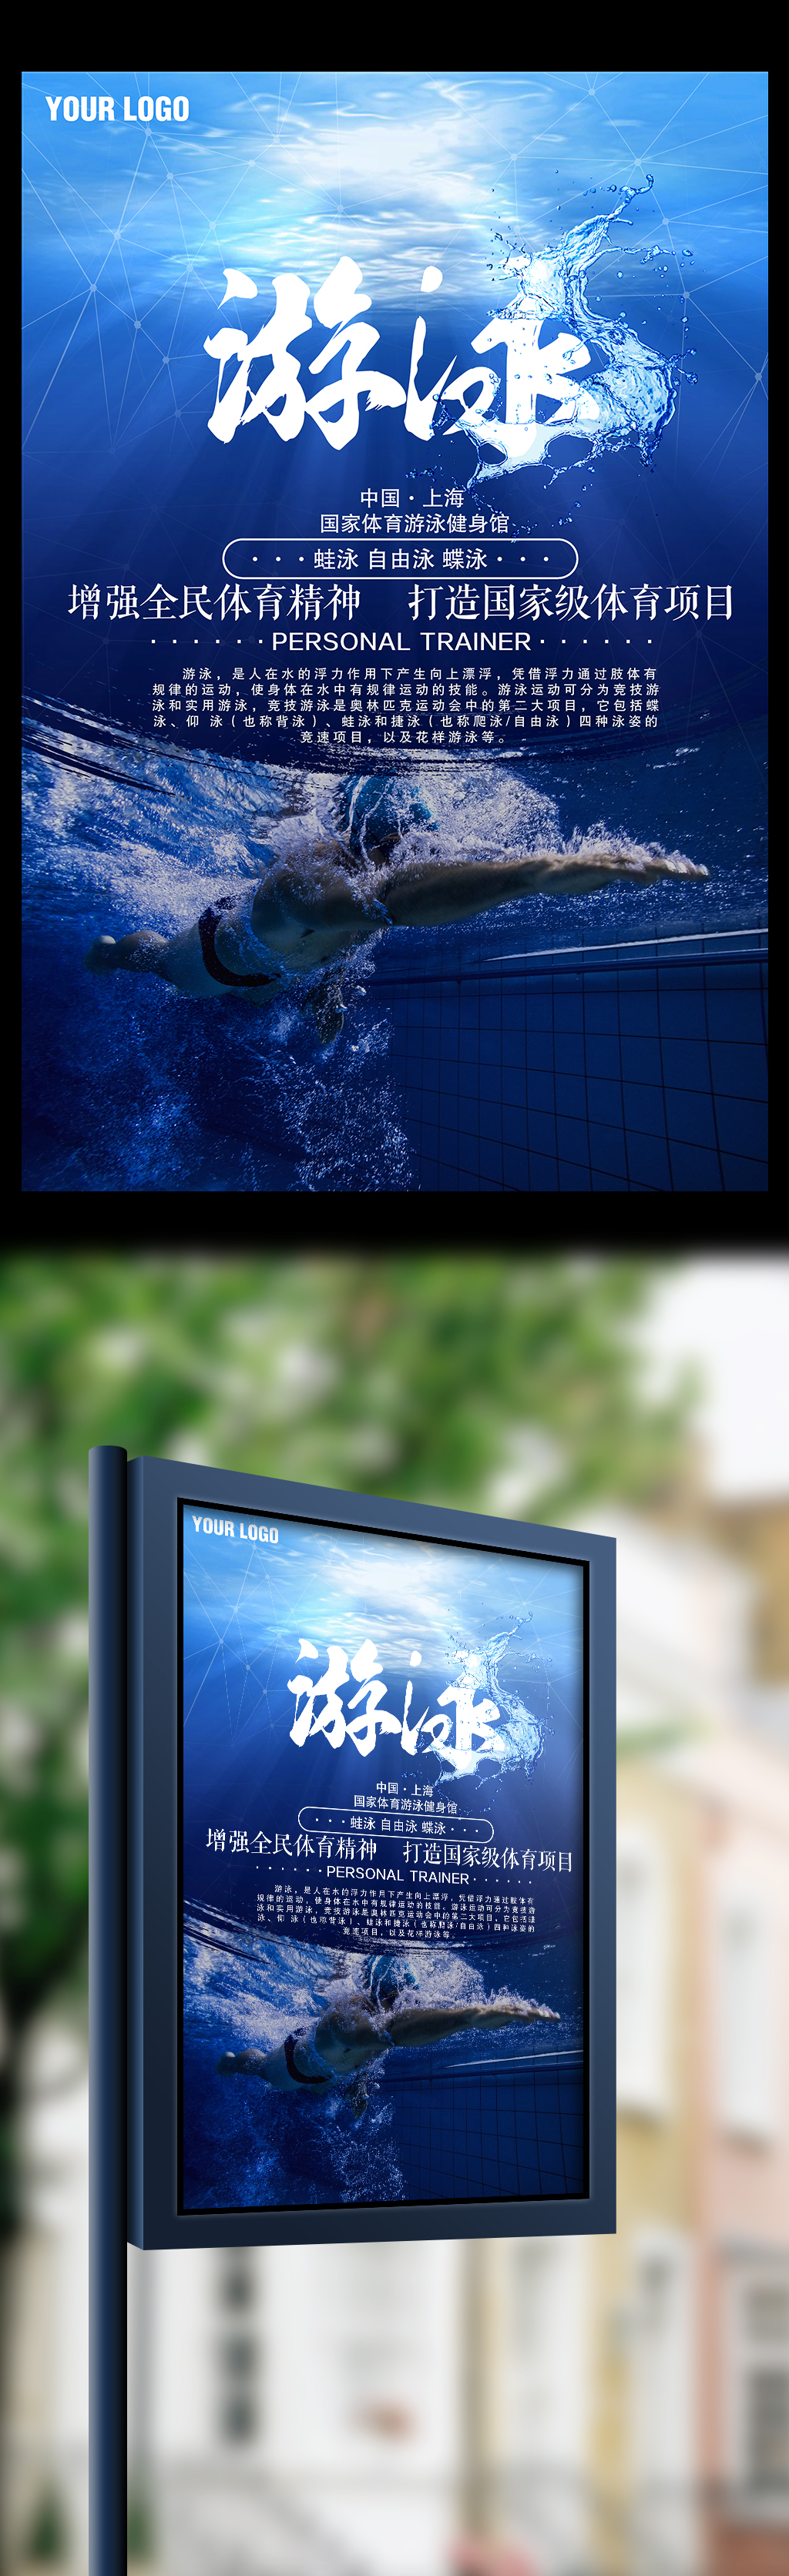 游泳比赛赛事体育运动宣传海报图片